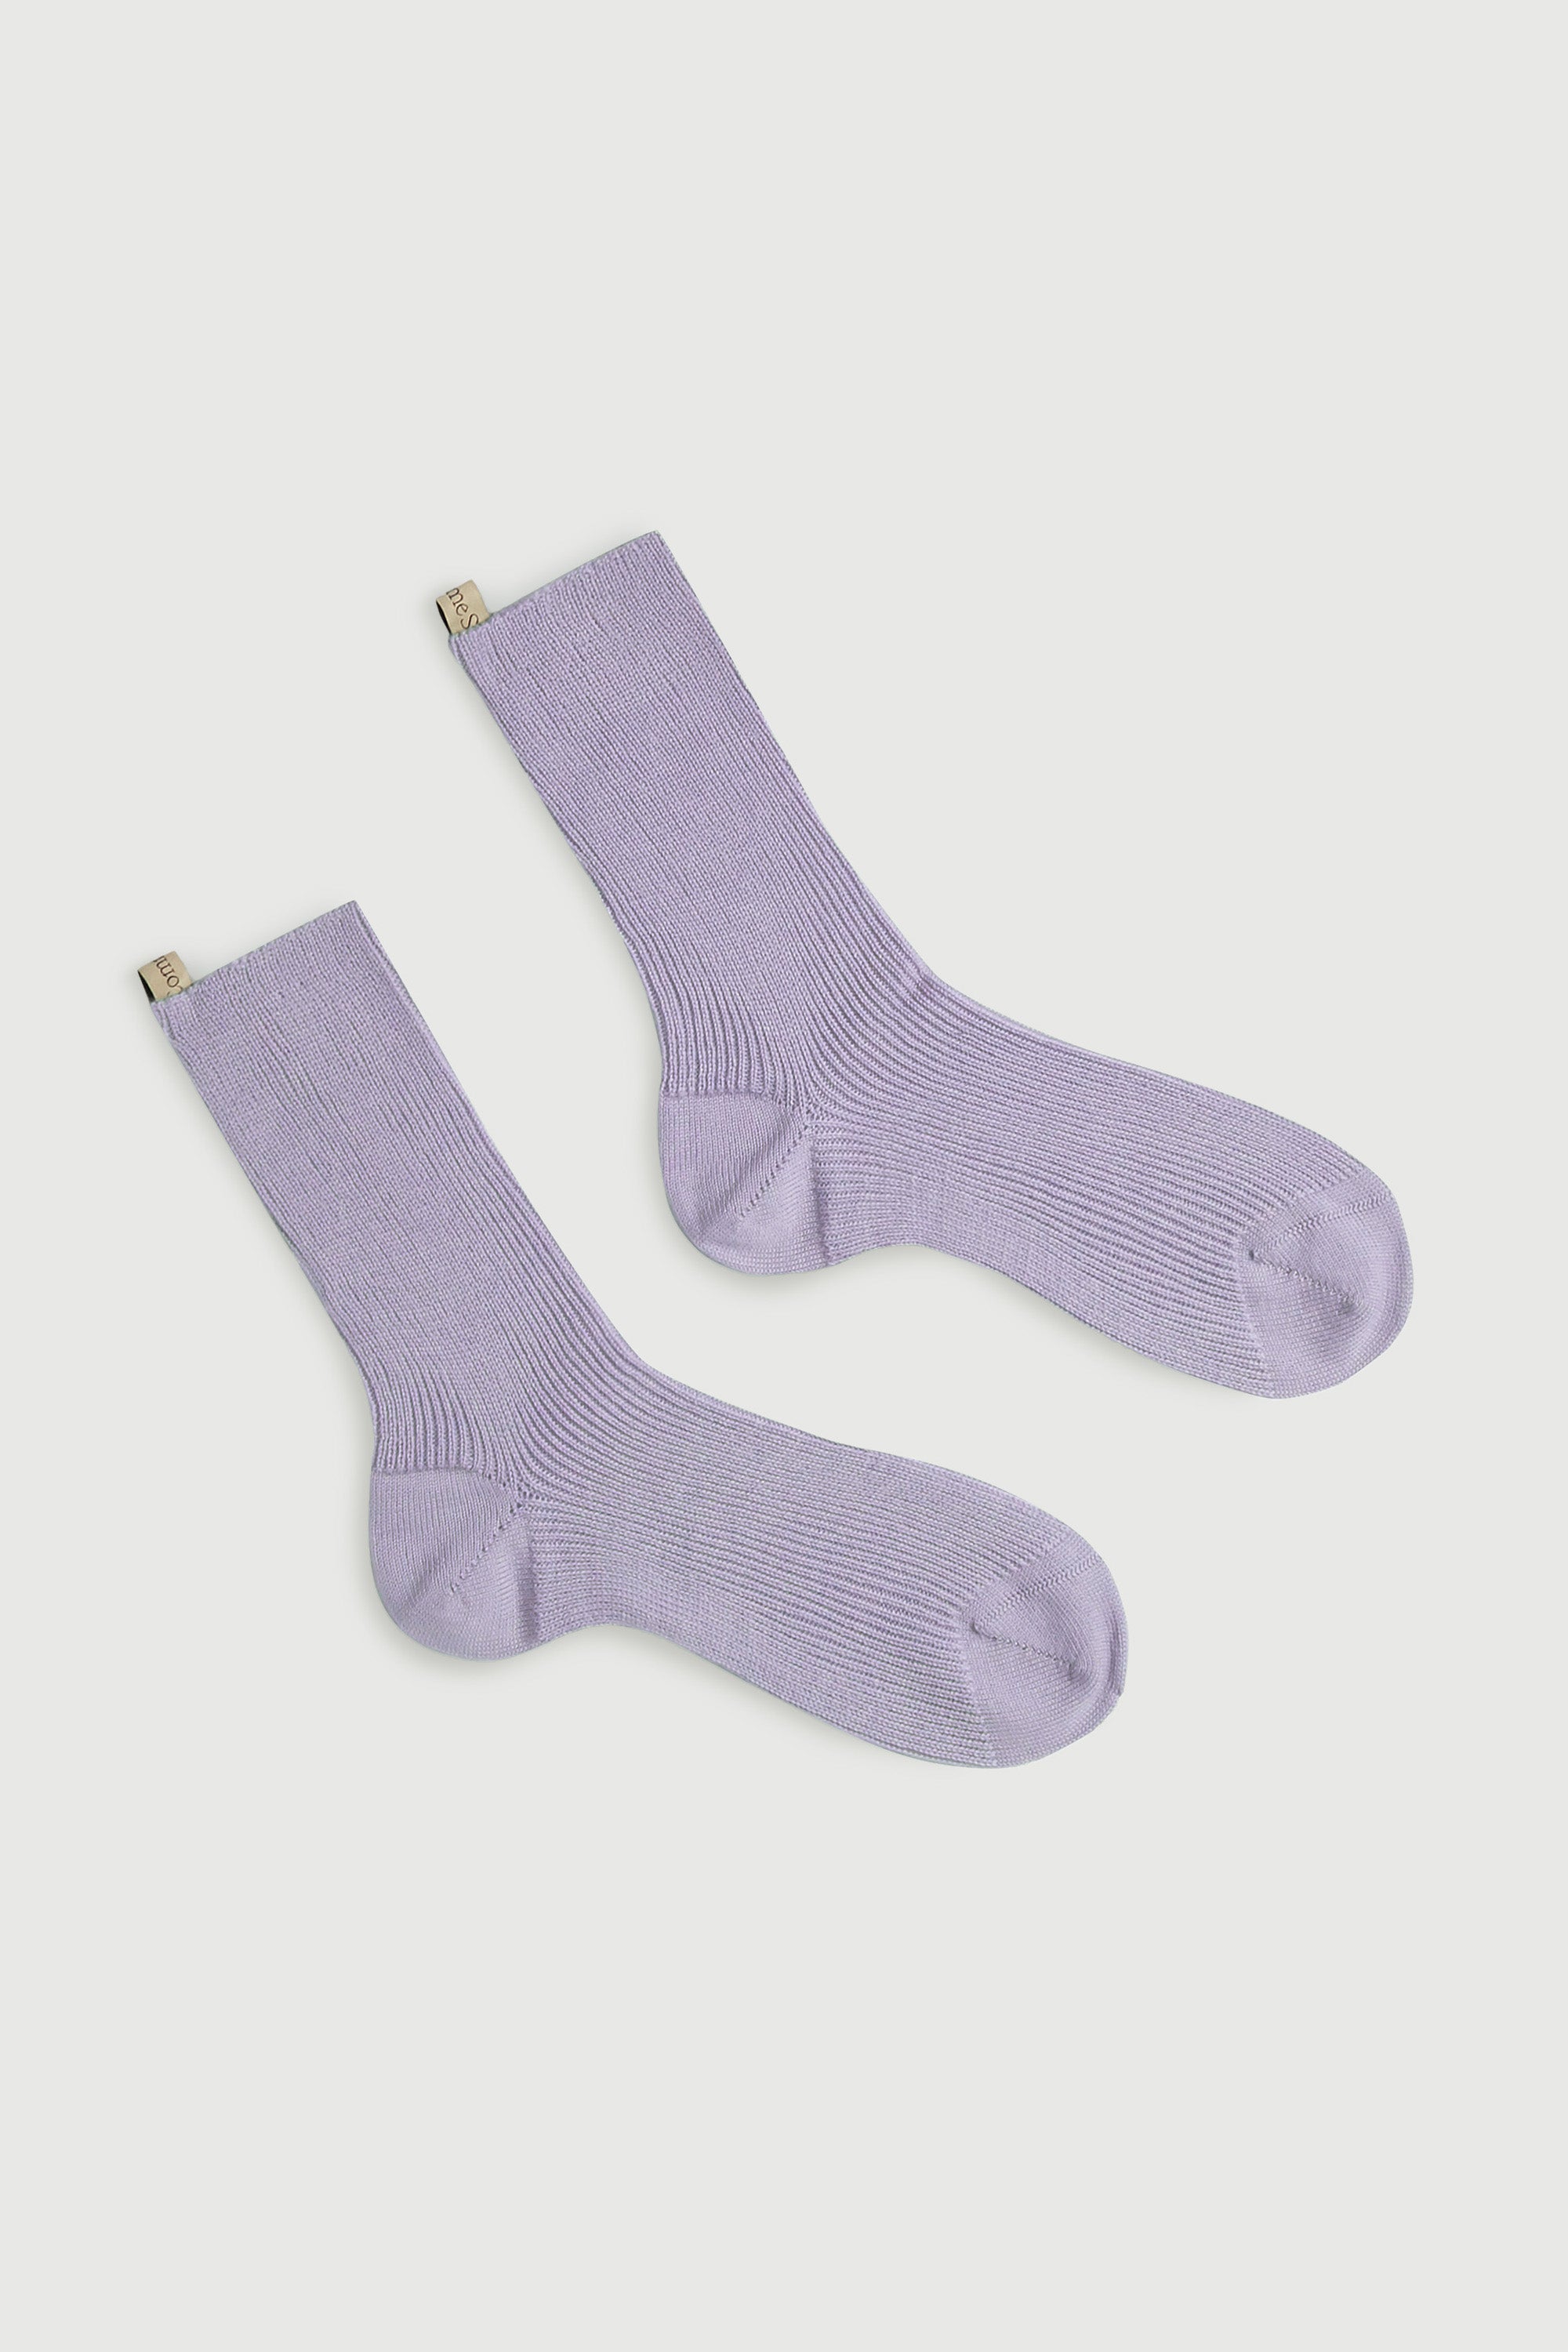 The Merino Sock in Lilac